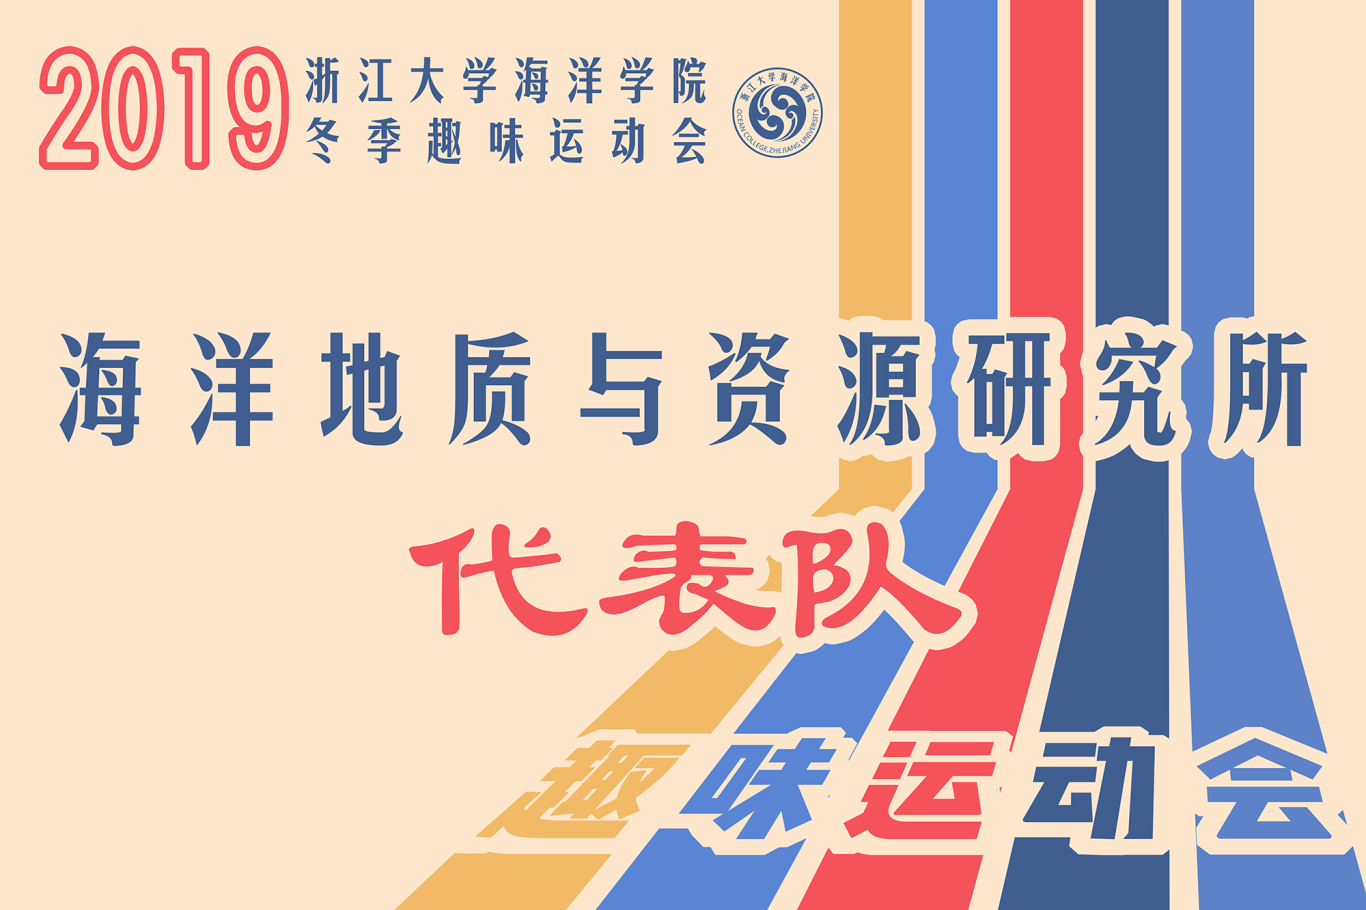 浙江大学海洋学院趣味运动会海报等设计图1